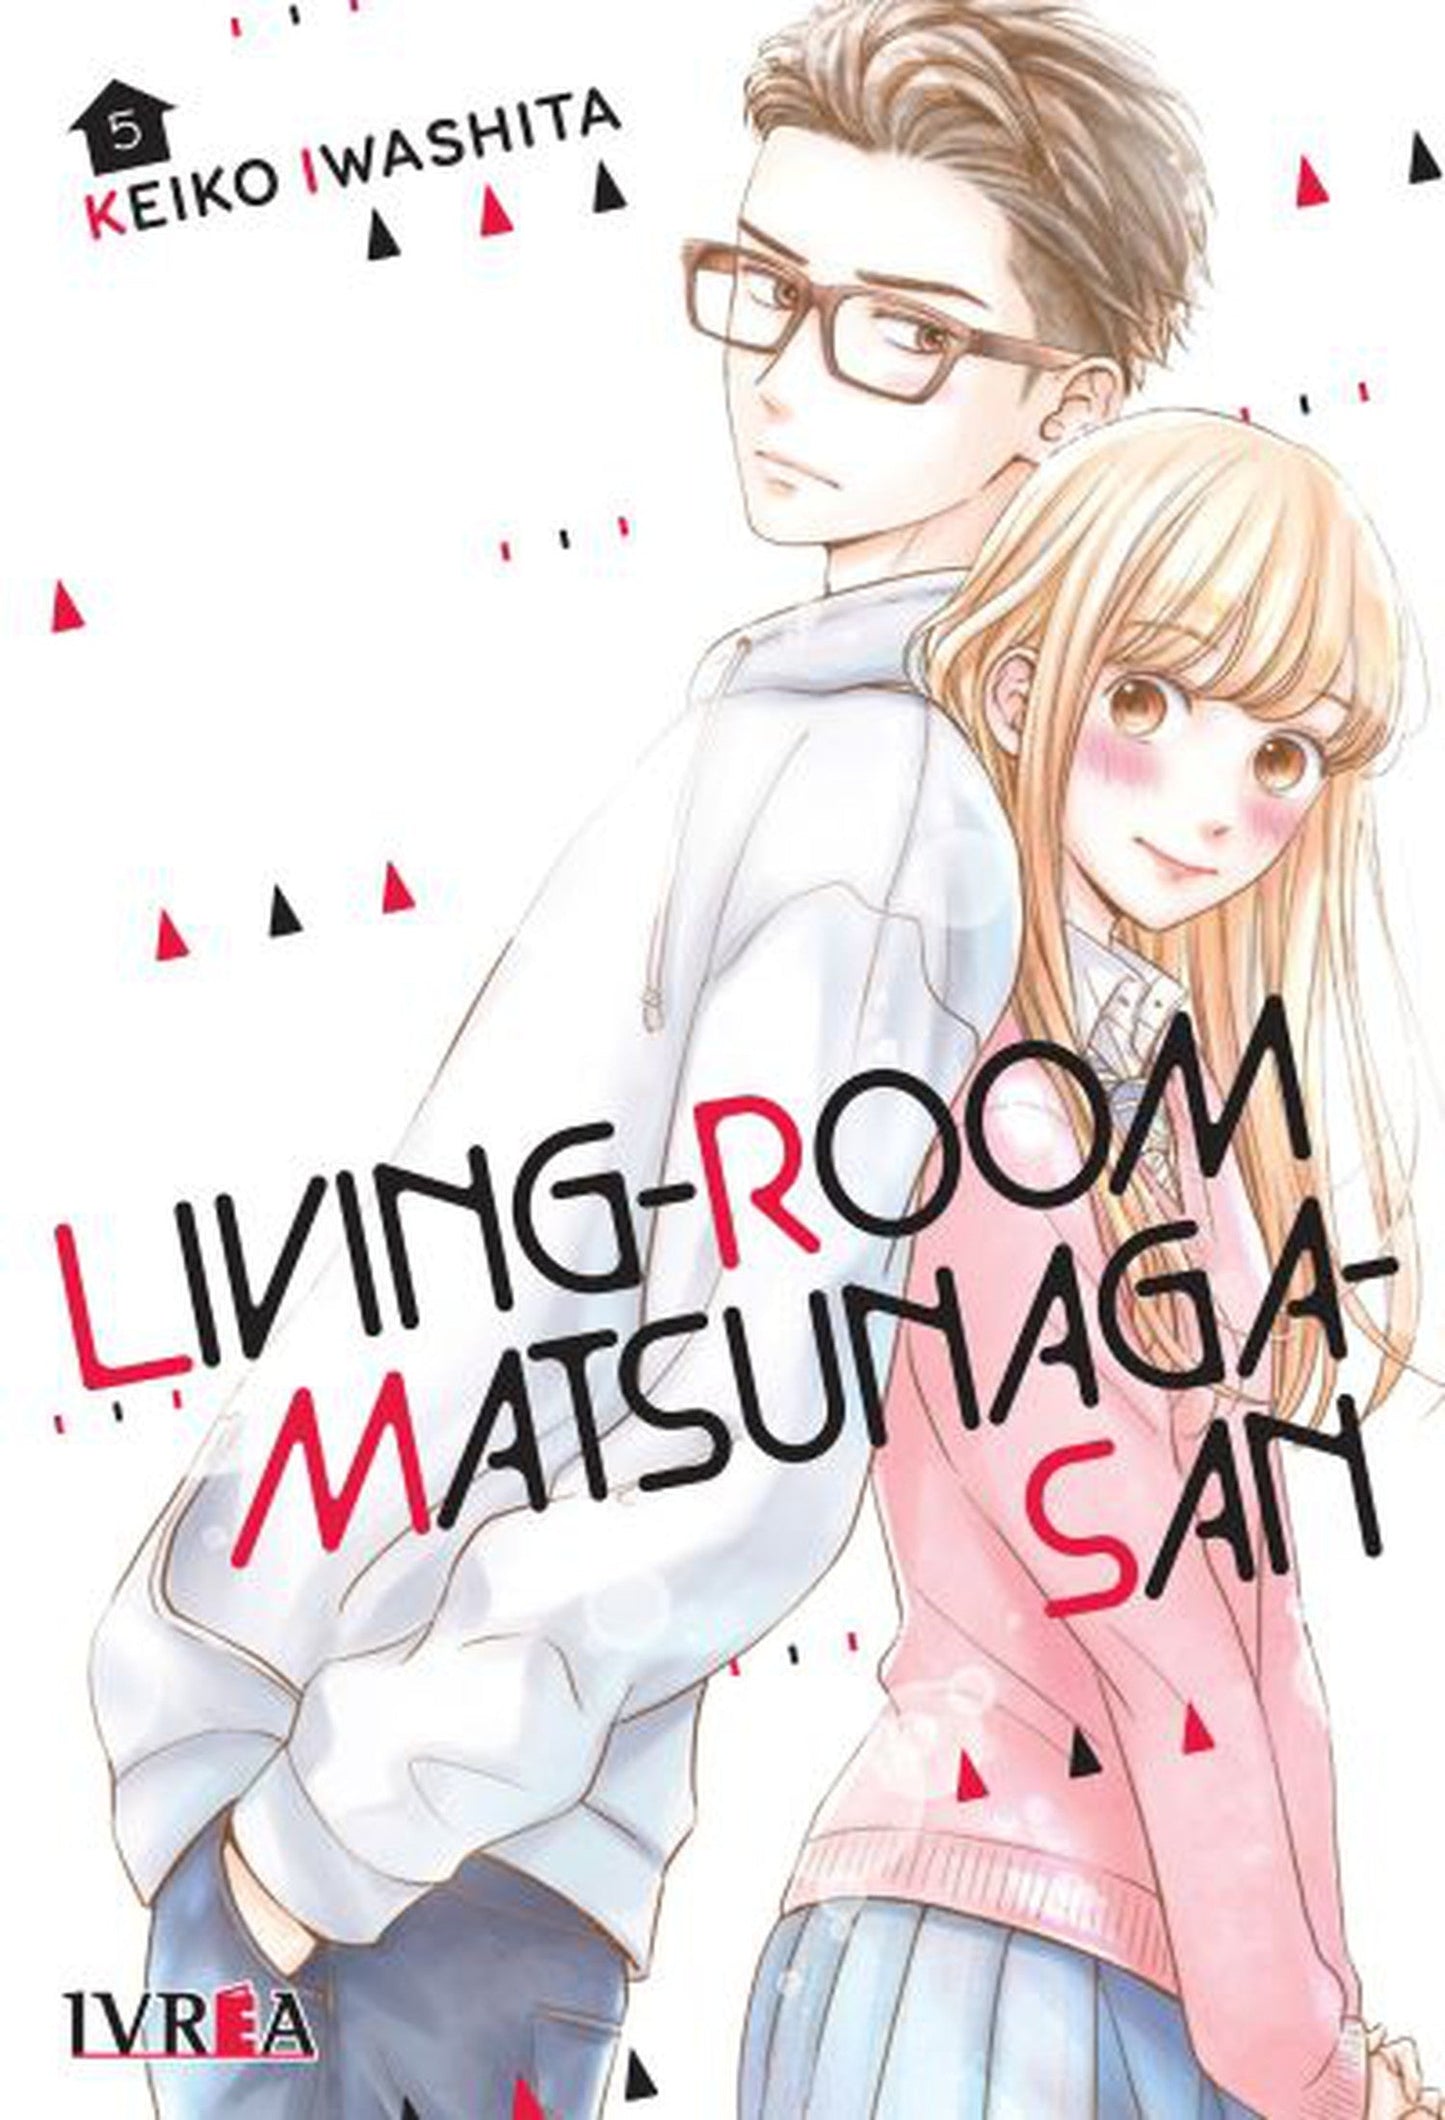 Living-Room Matsunaga-san 05 Ivrea Argentina ENcuadrocomics